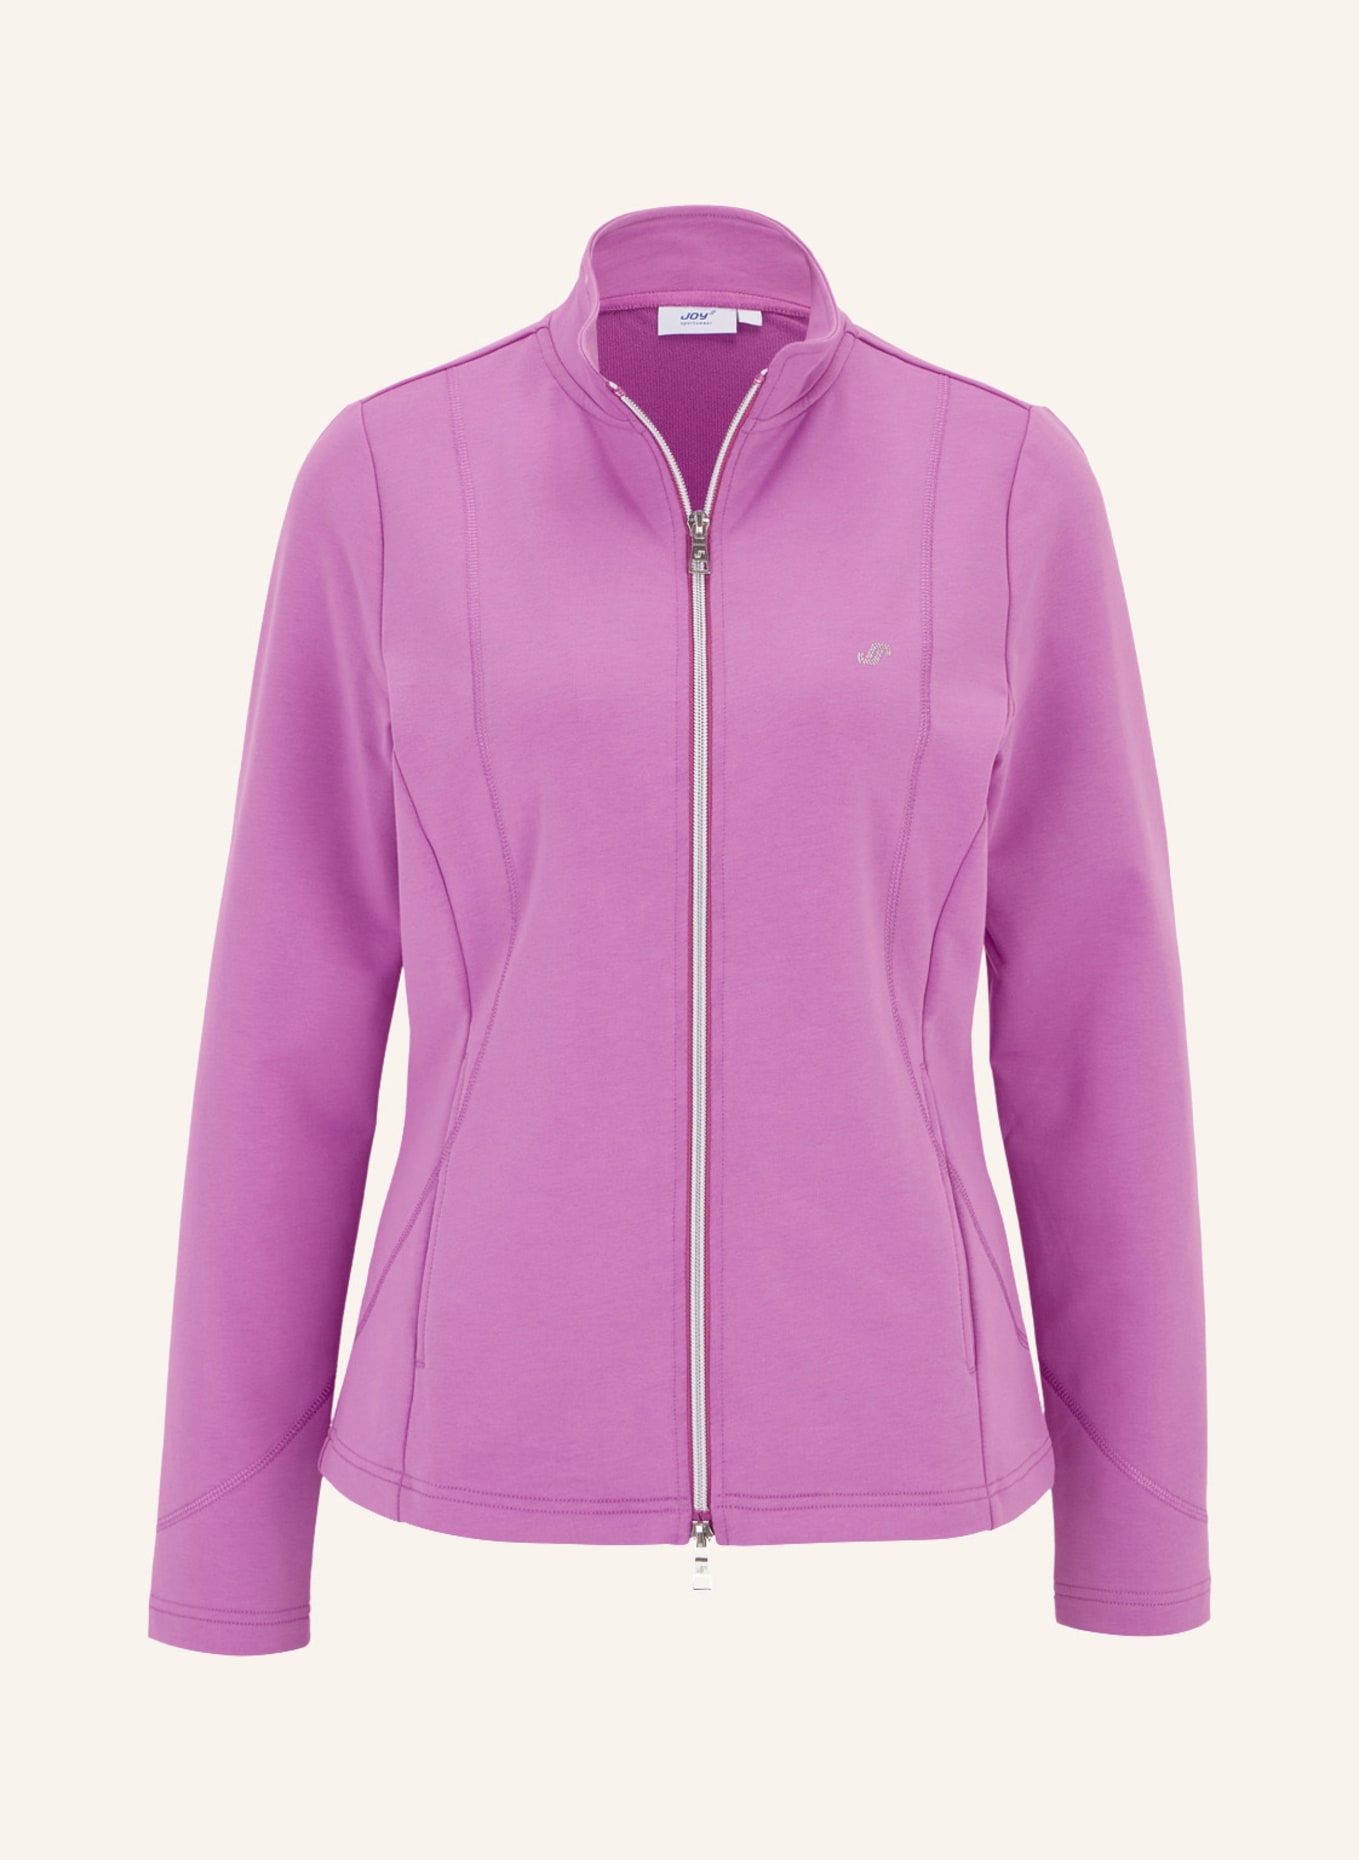 JOY sportswear Jacke DORIT, Farbe: ROT (Bild 1)